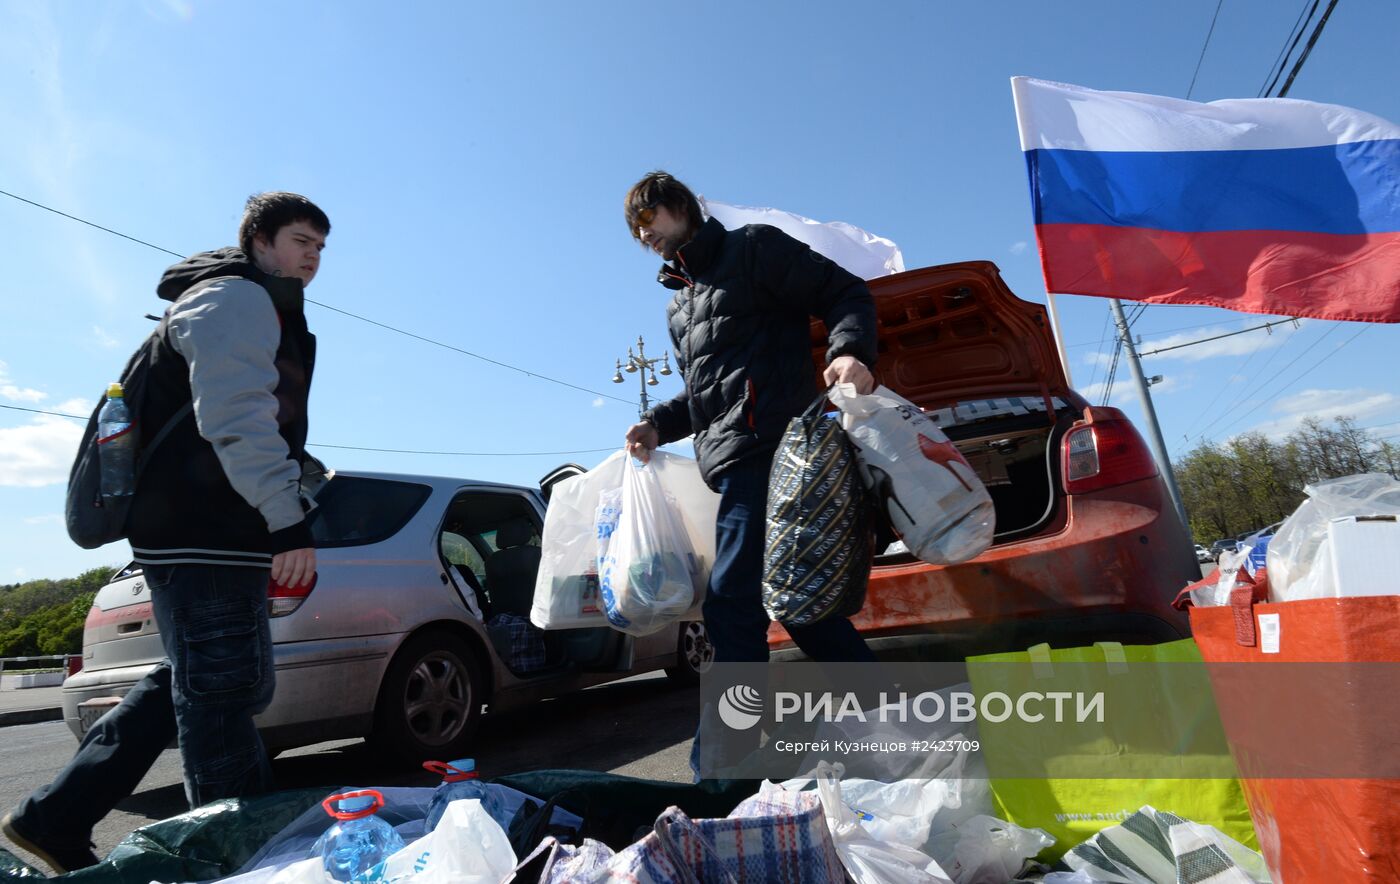 Акция по сбору гуманитарной помощи для юго-востока Украины в Москве